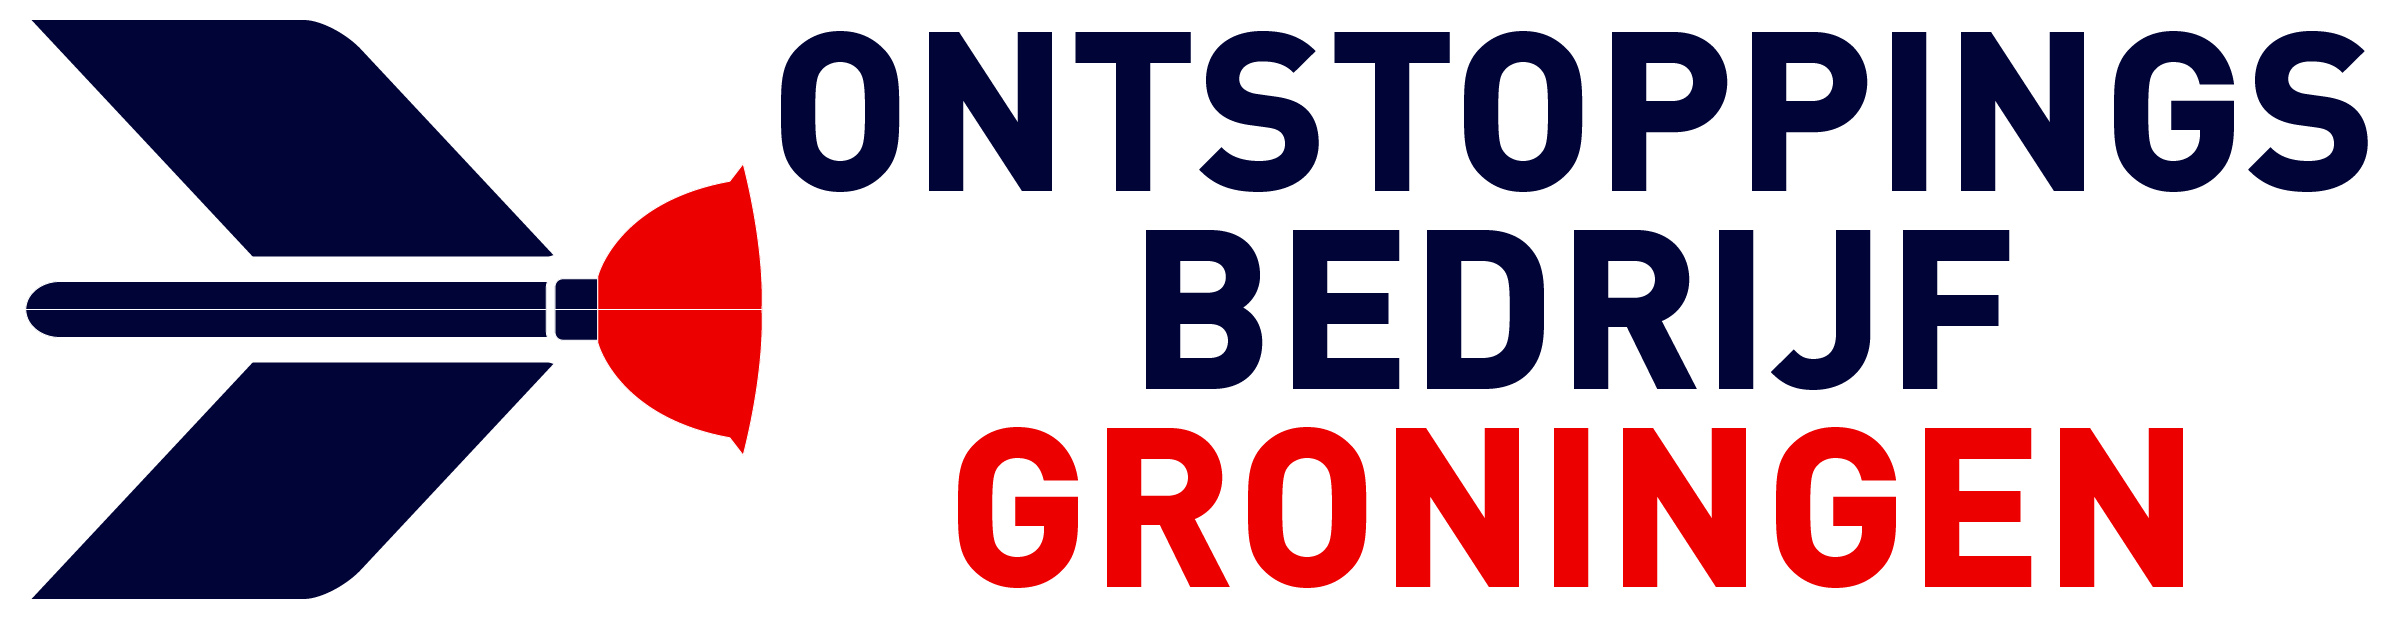 Ontstoppingsbedrijf Groningen logo